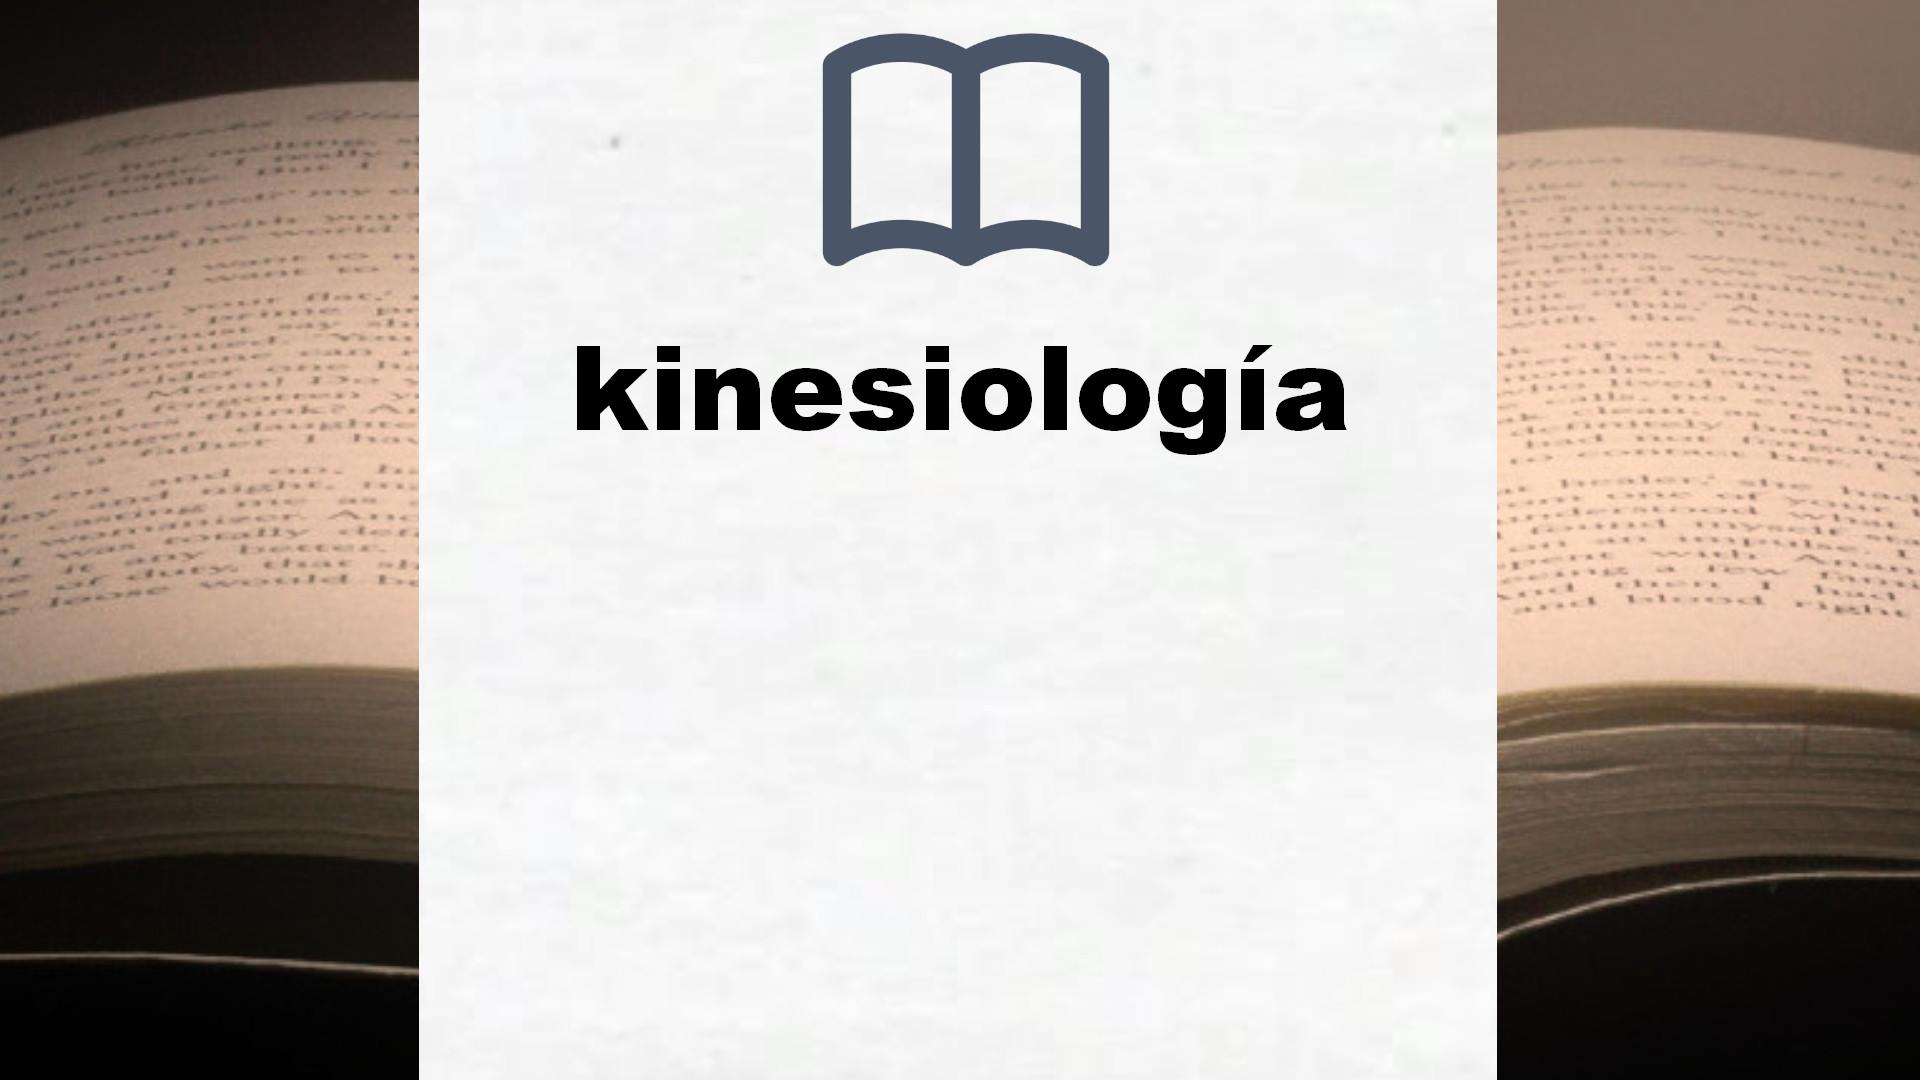 Libros sobre kinesiología